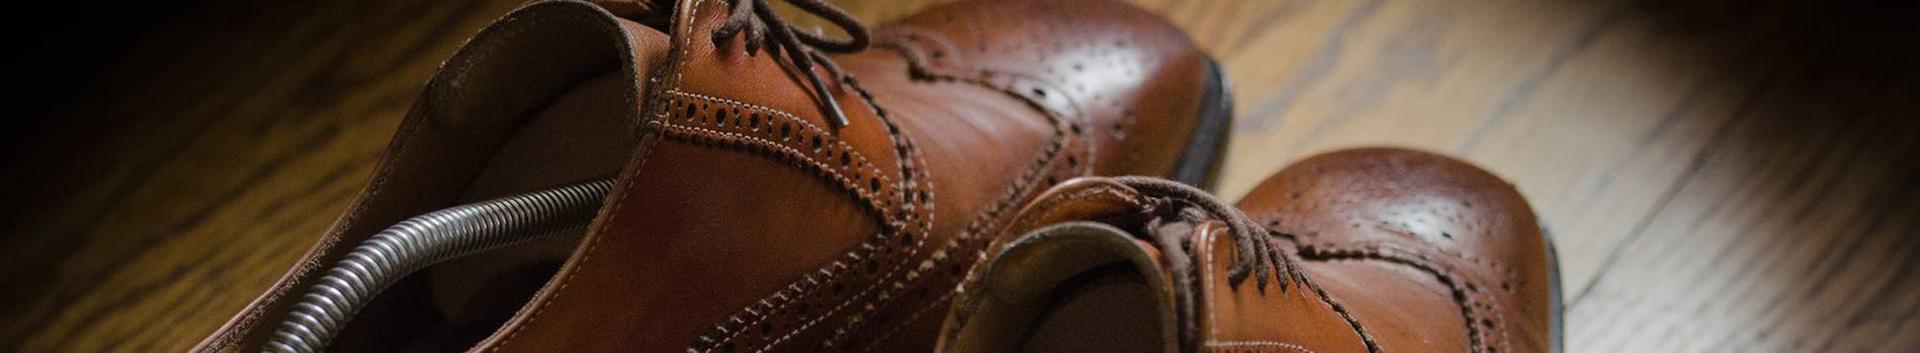 Repair of footwear, Shoemakers, Leather and footwear industry